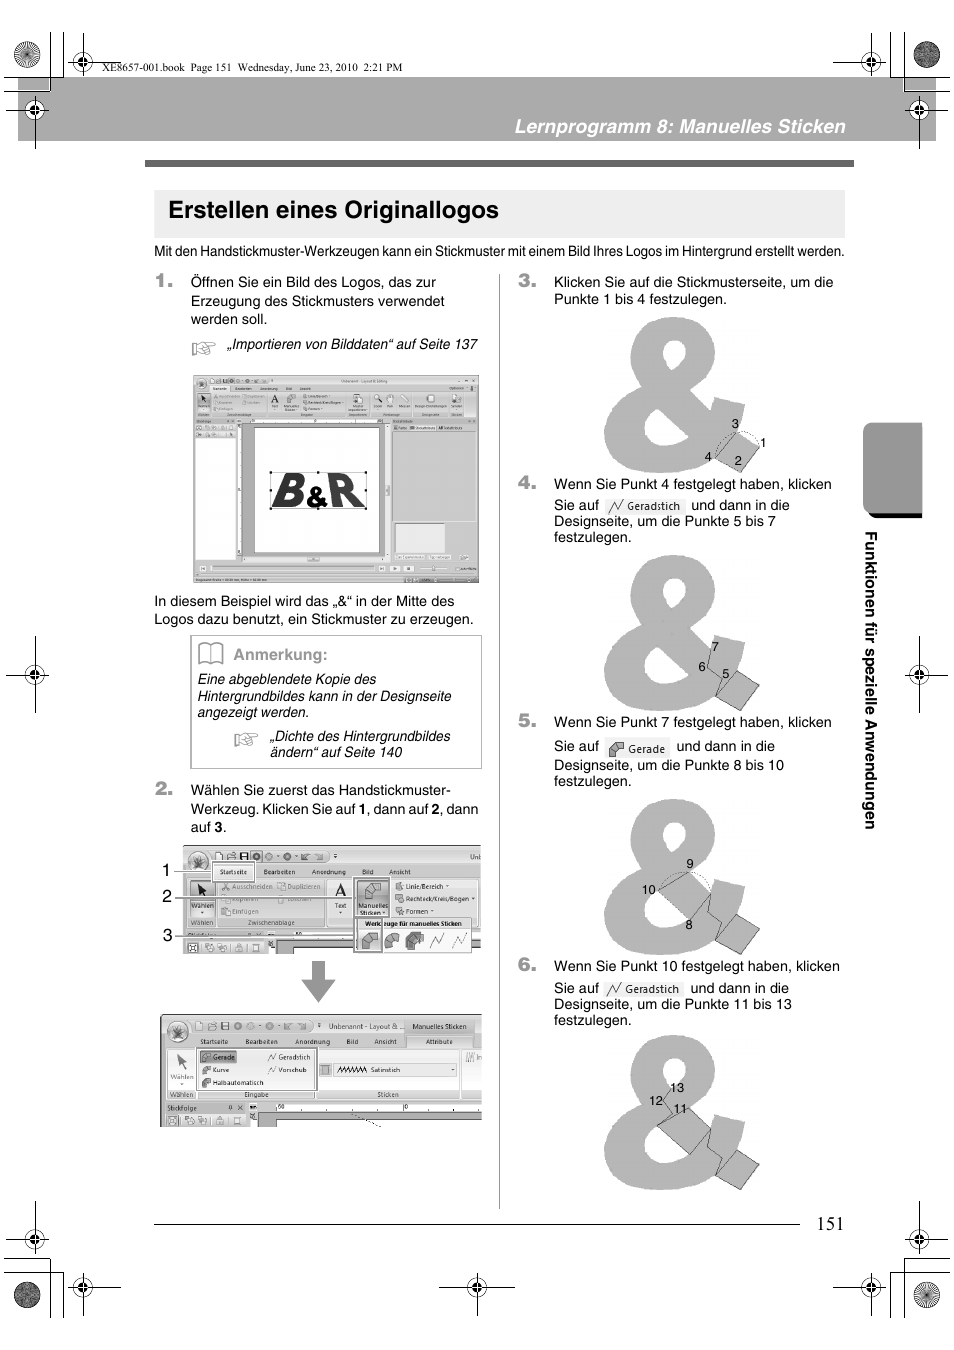 Erstellen eines originallogos, Lernprogramm 8: manuelles sticken | Brother PE-DESIGN NEXT Benutzerhandbuch | Seite 153 / 320